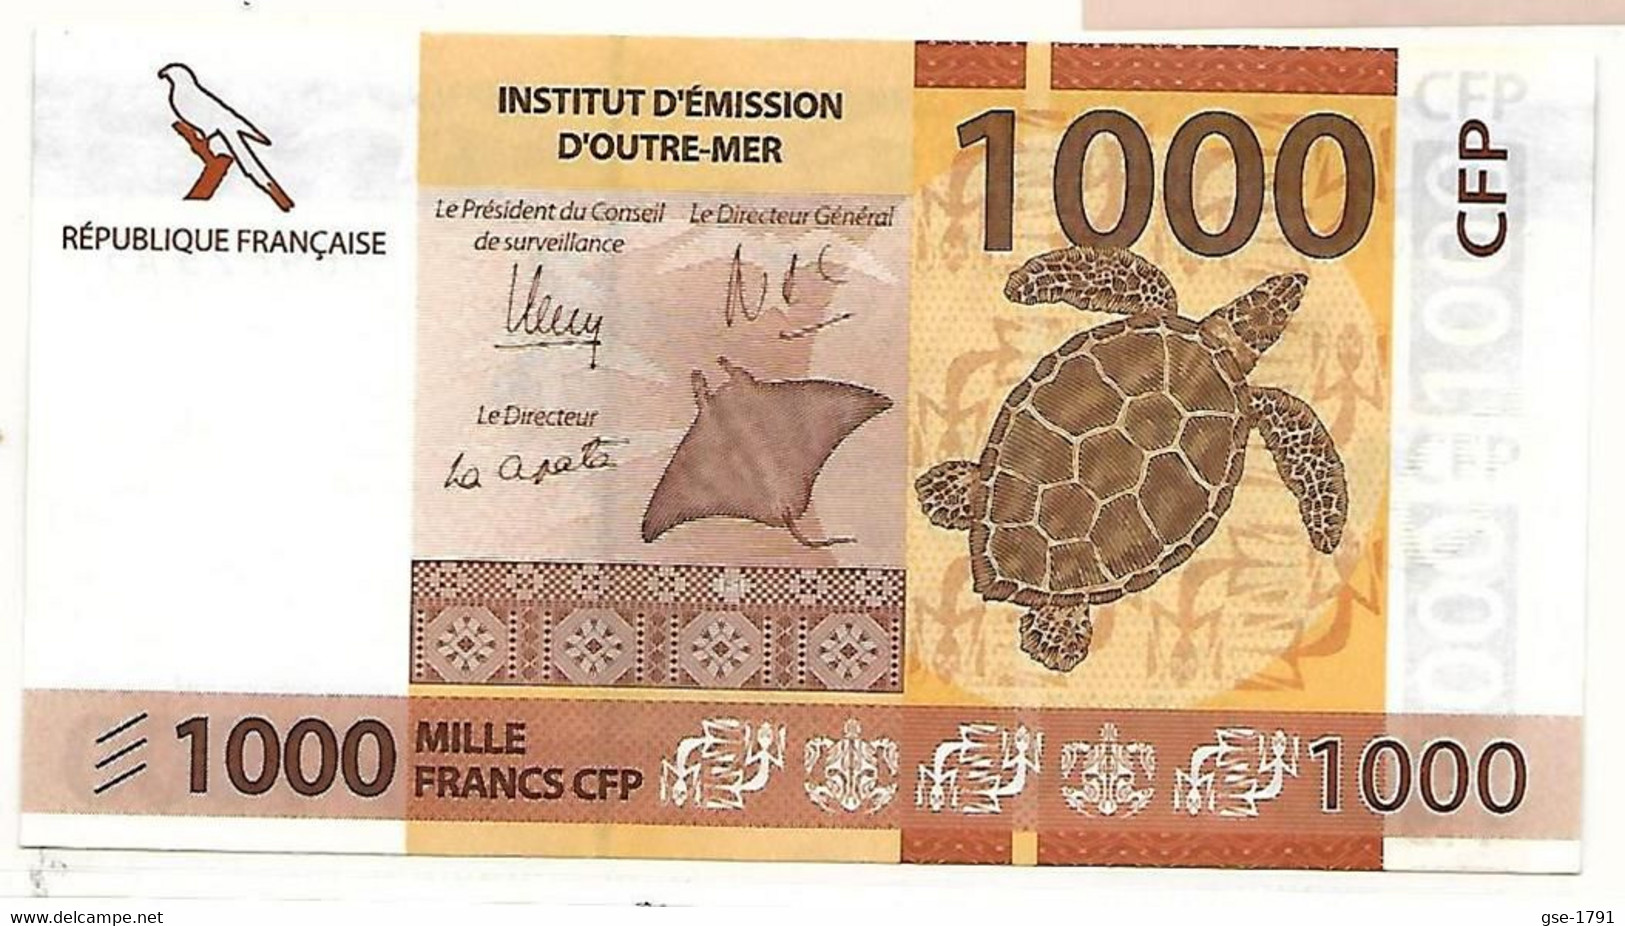 IEOM : Nlle CALEDONIE, TAHITI ,WALLIS  Nouveaux  Billets De 100 Francs 2014 1 ère  émission, Série A1 NEUF - French Pacific Territories (1992-...)